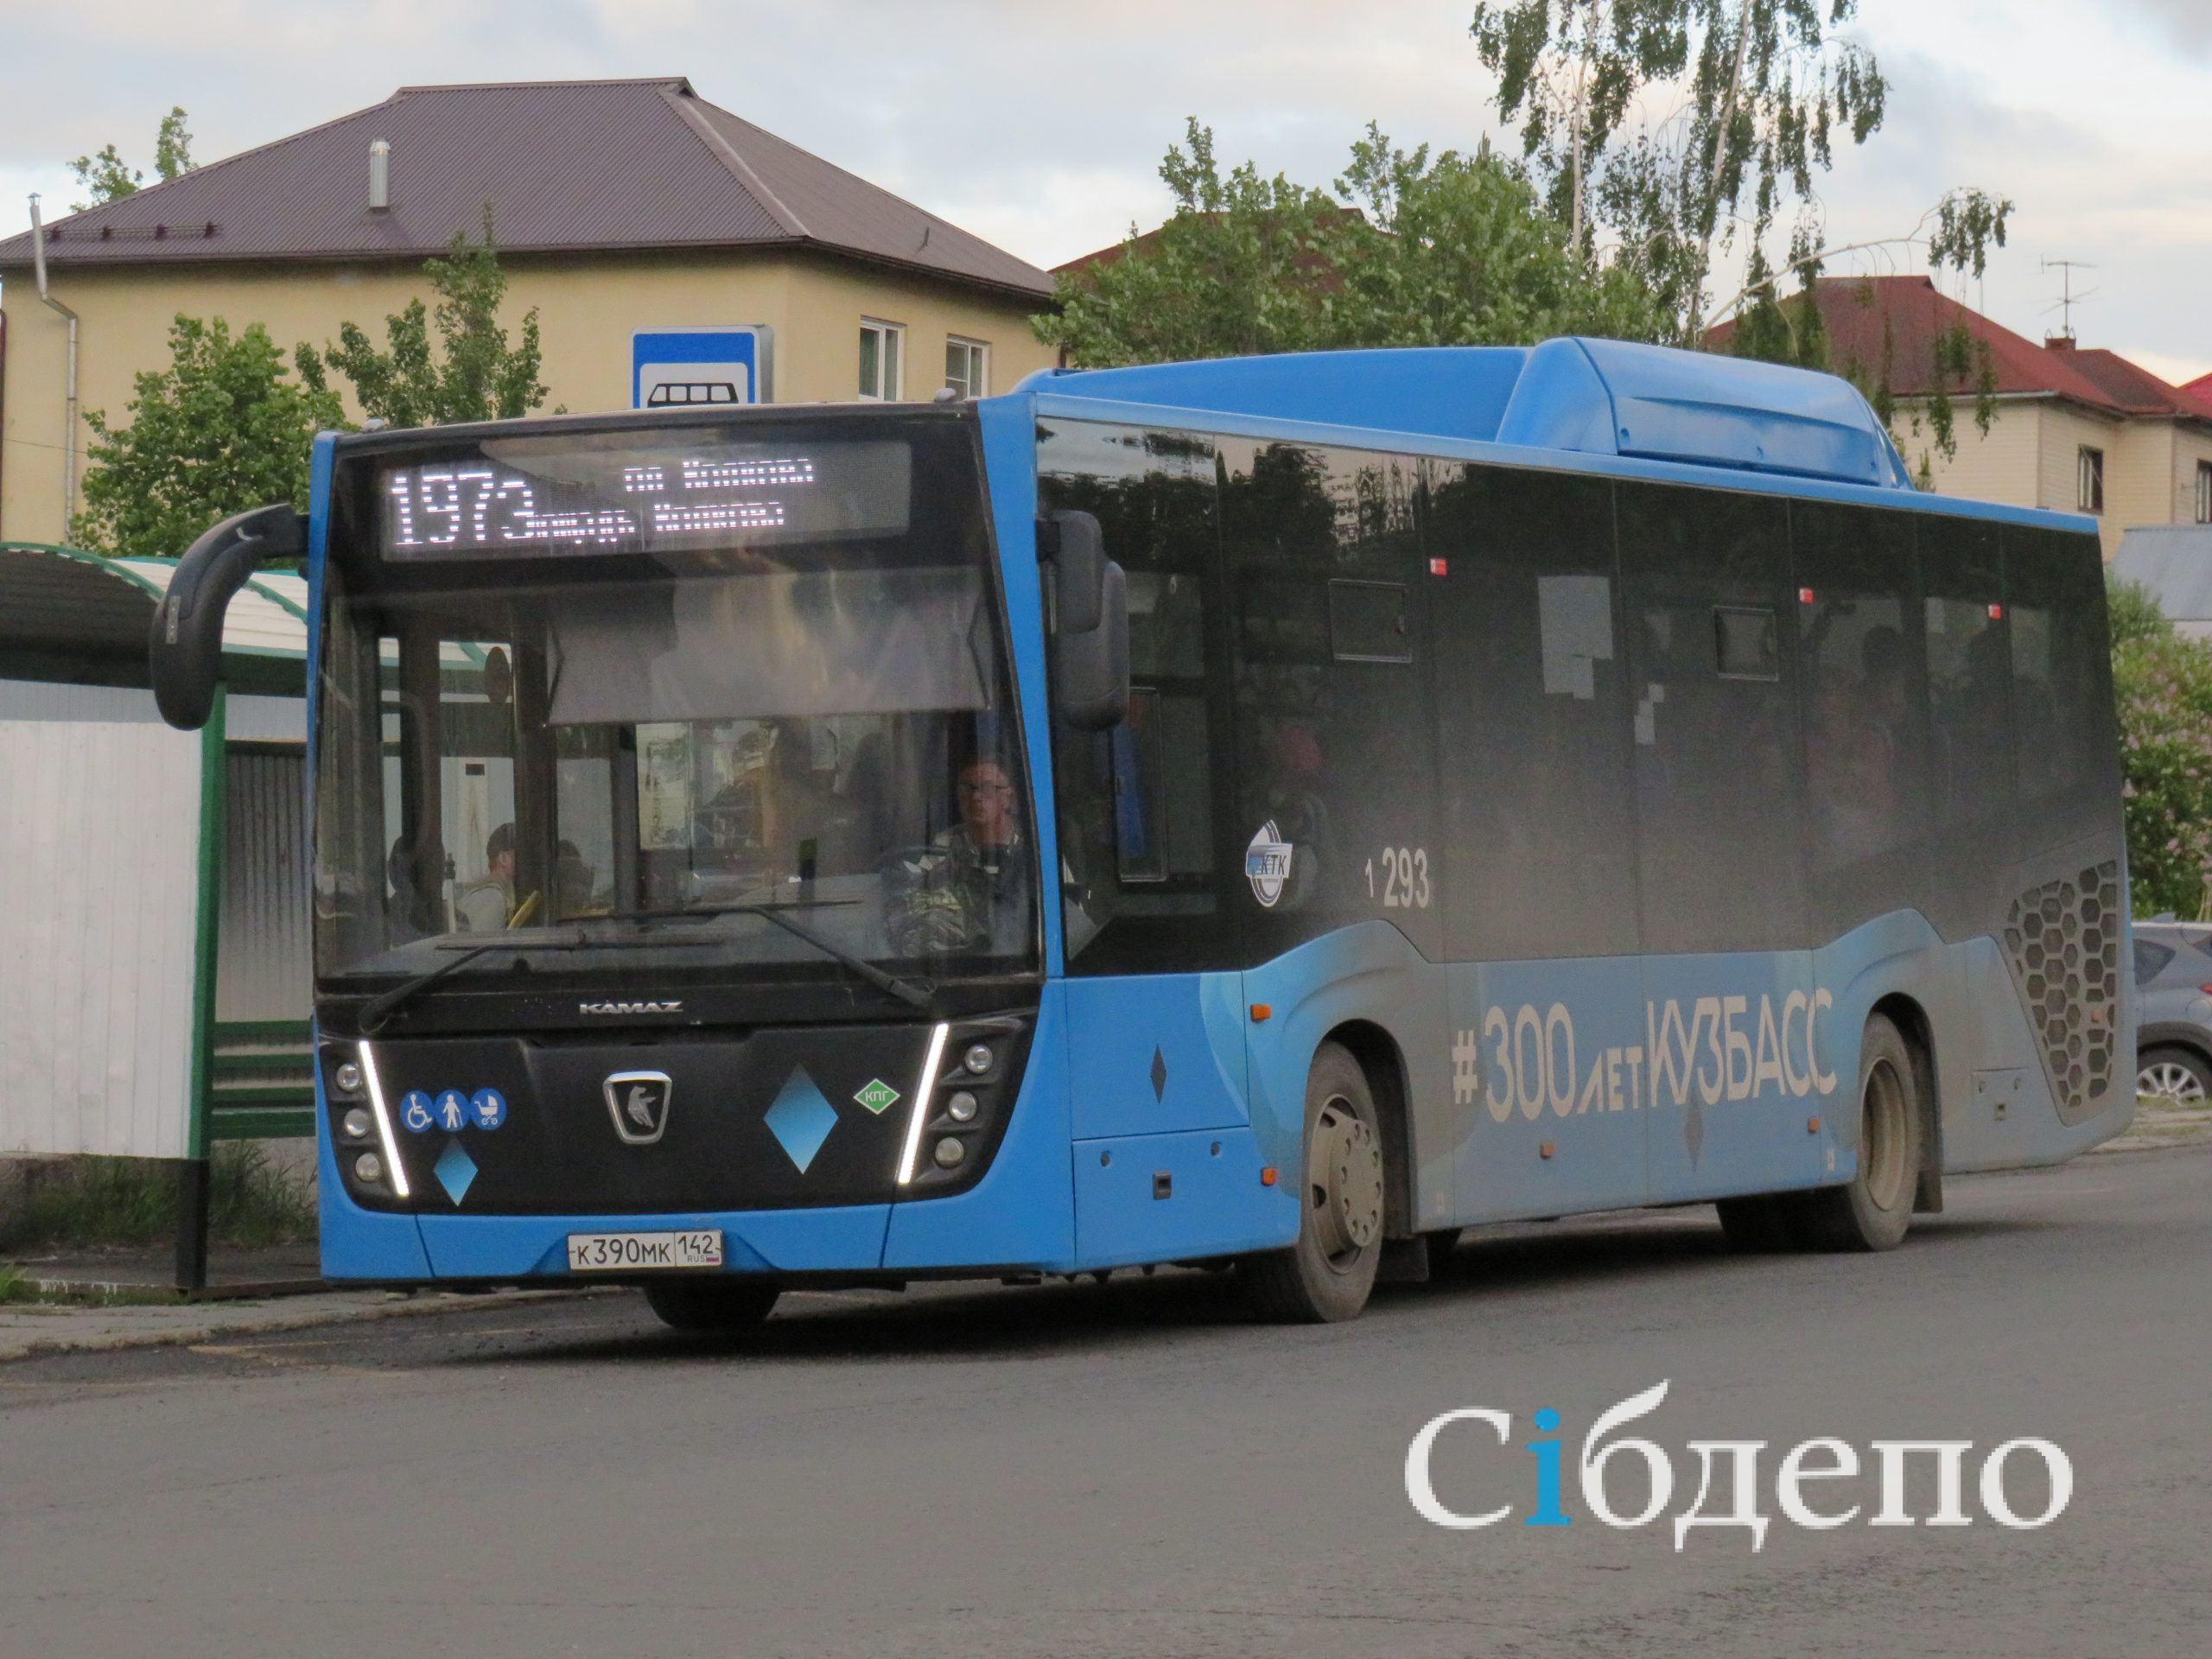 «Как хочу, так и кручу»: водители автобусов в Кемерове нагло игнорируют требования властей